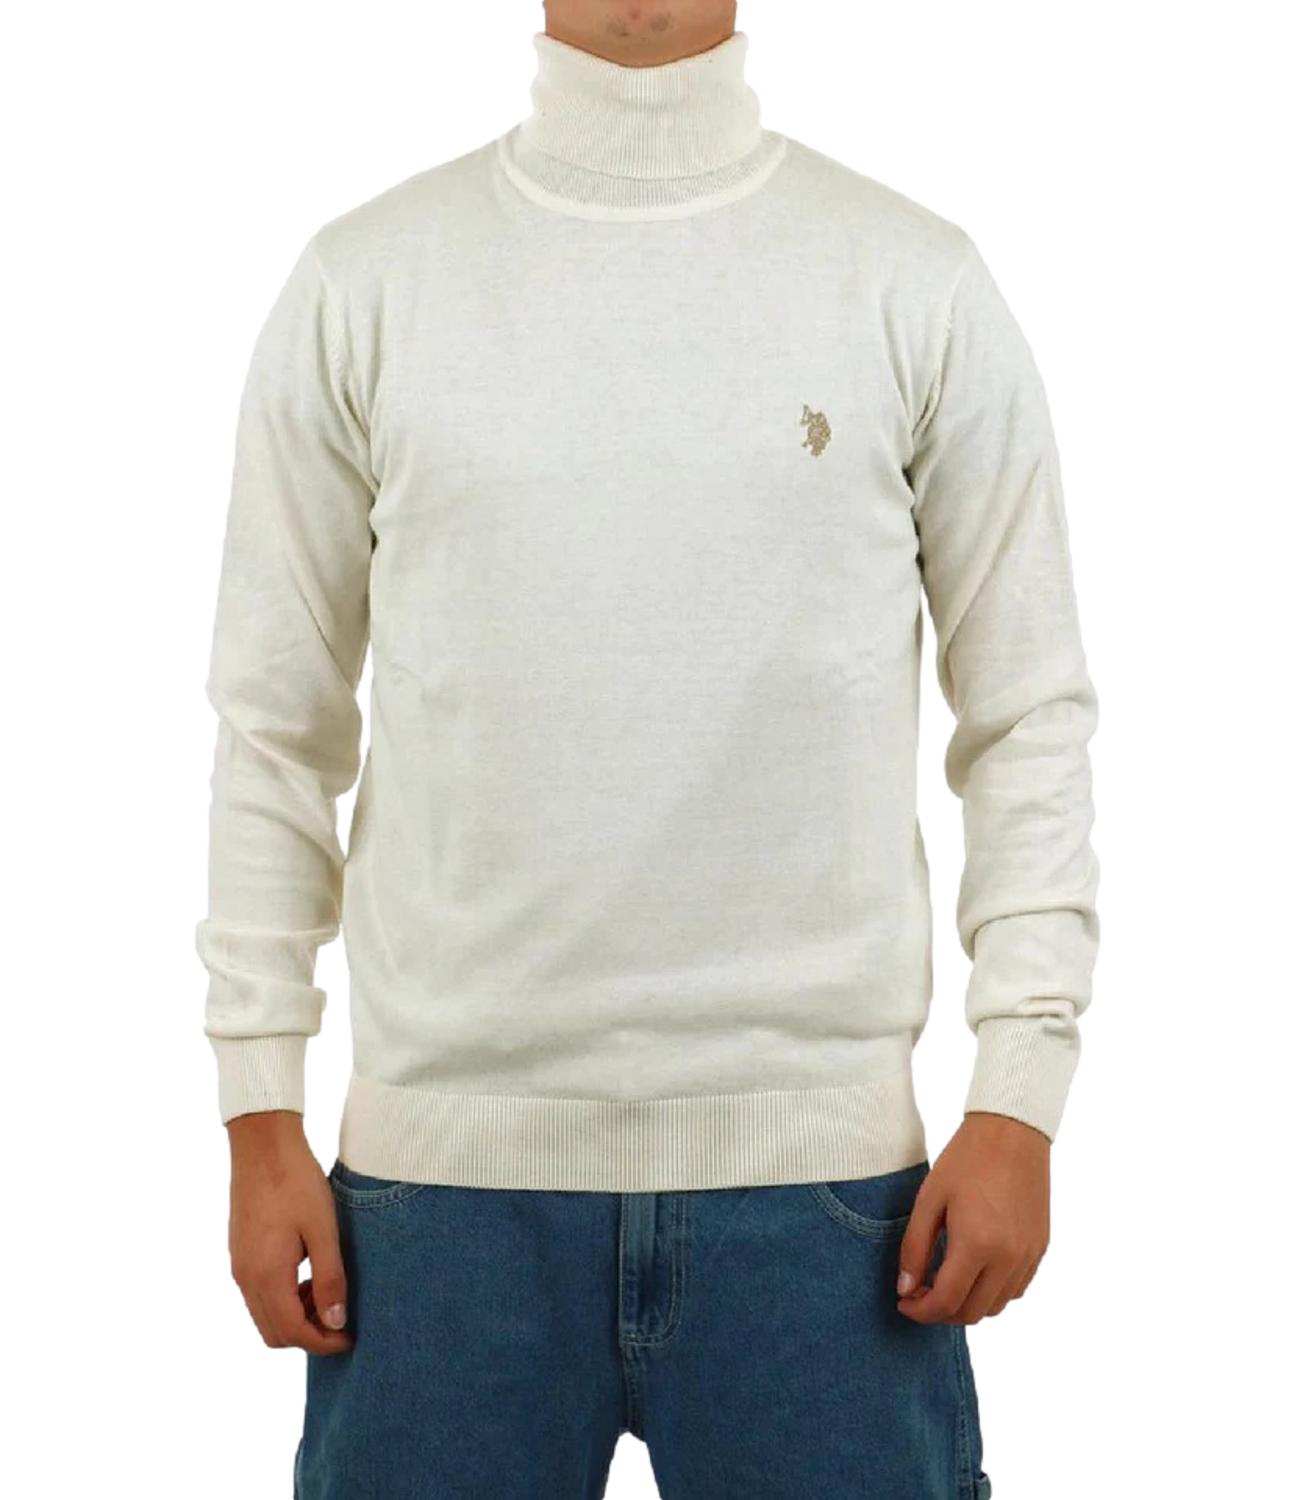 Creamy white US Polo turtleneck sweater John